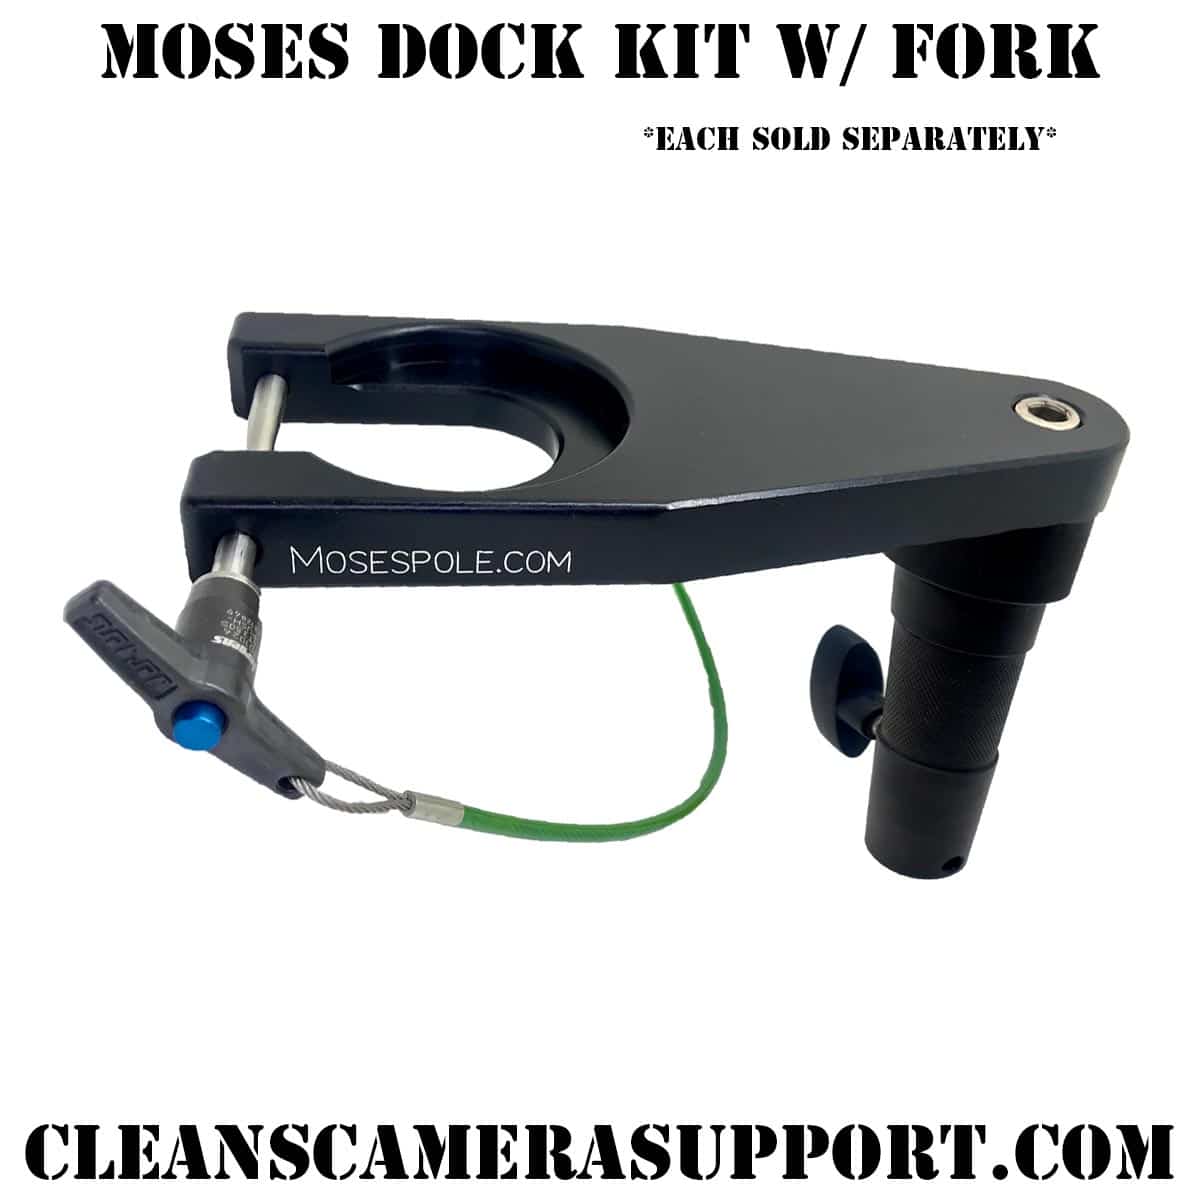 Moses Dock Kit